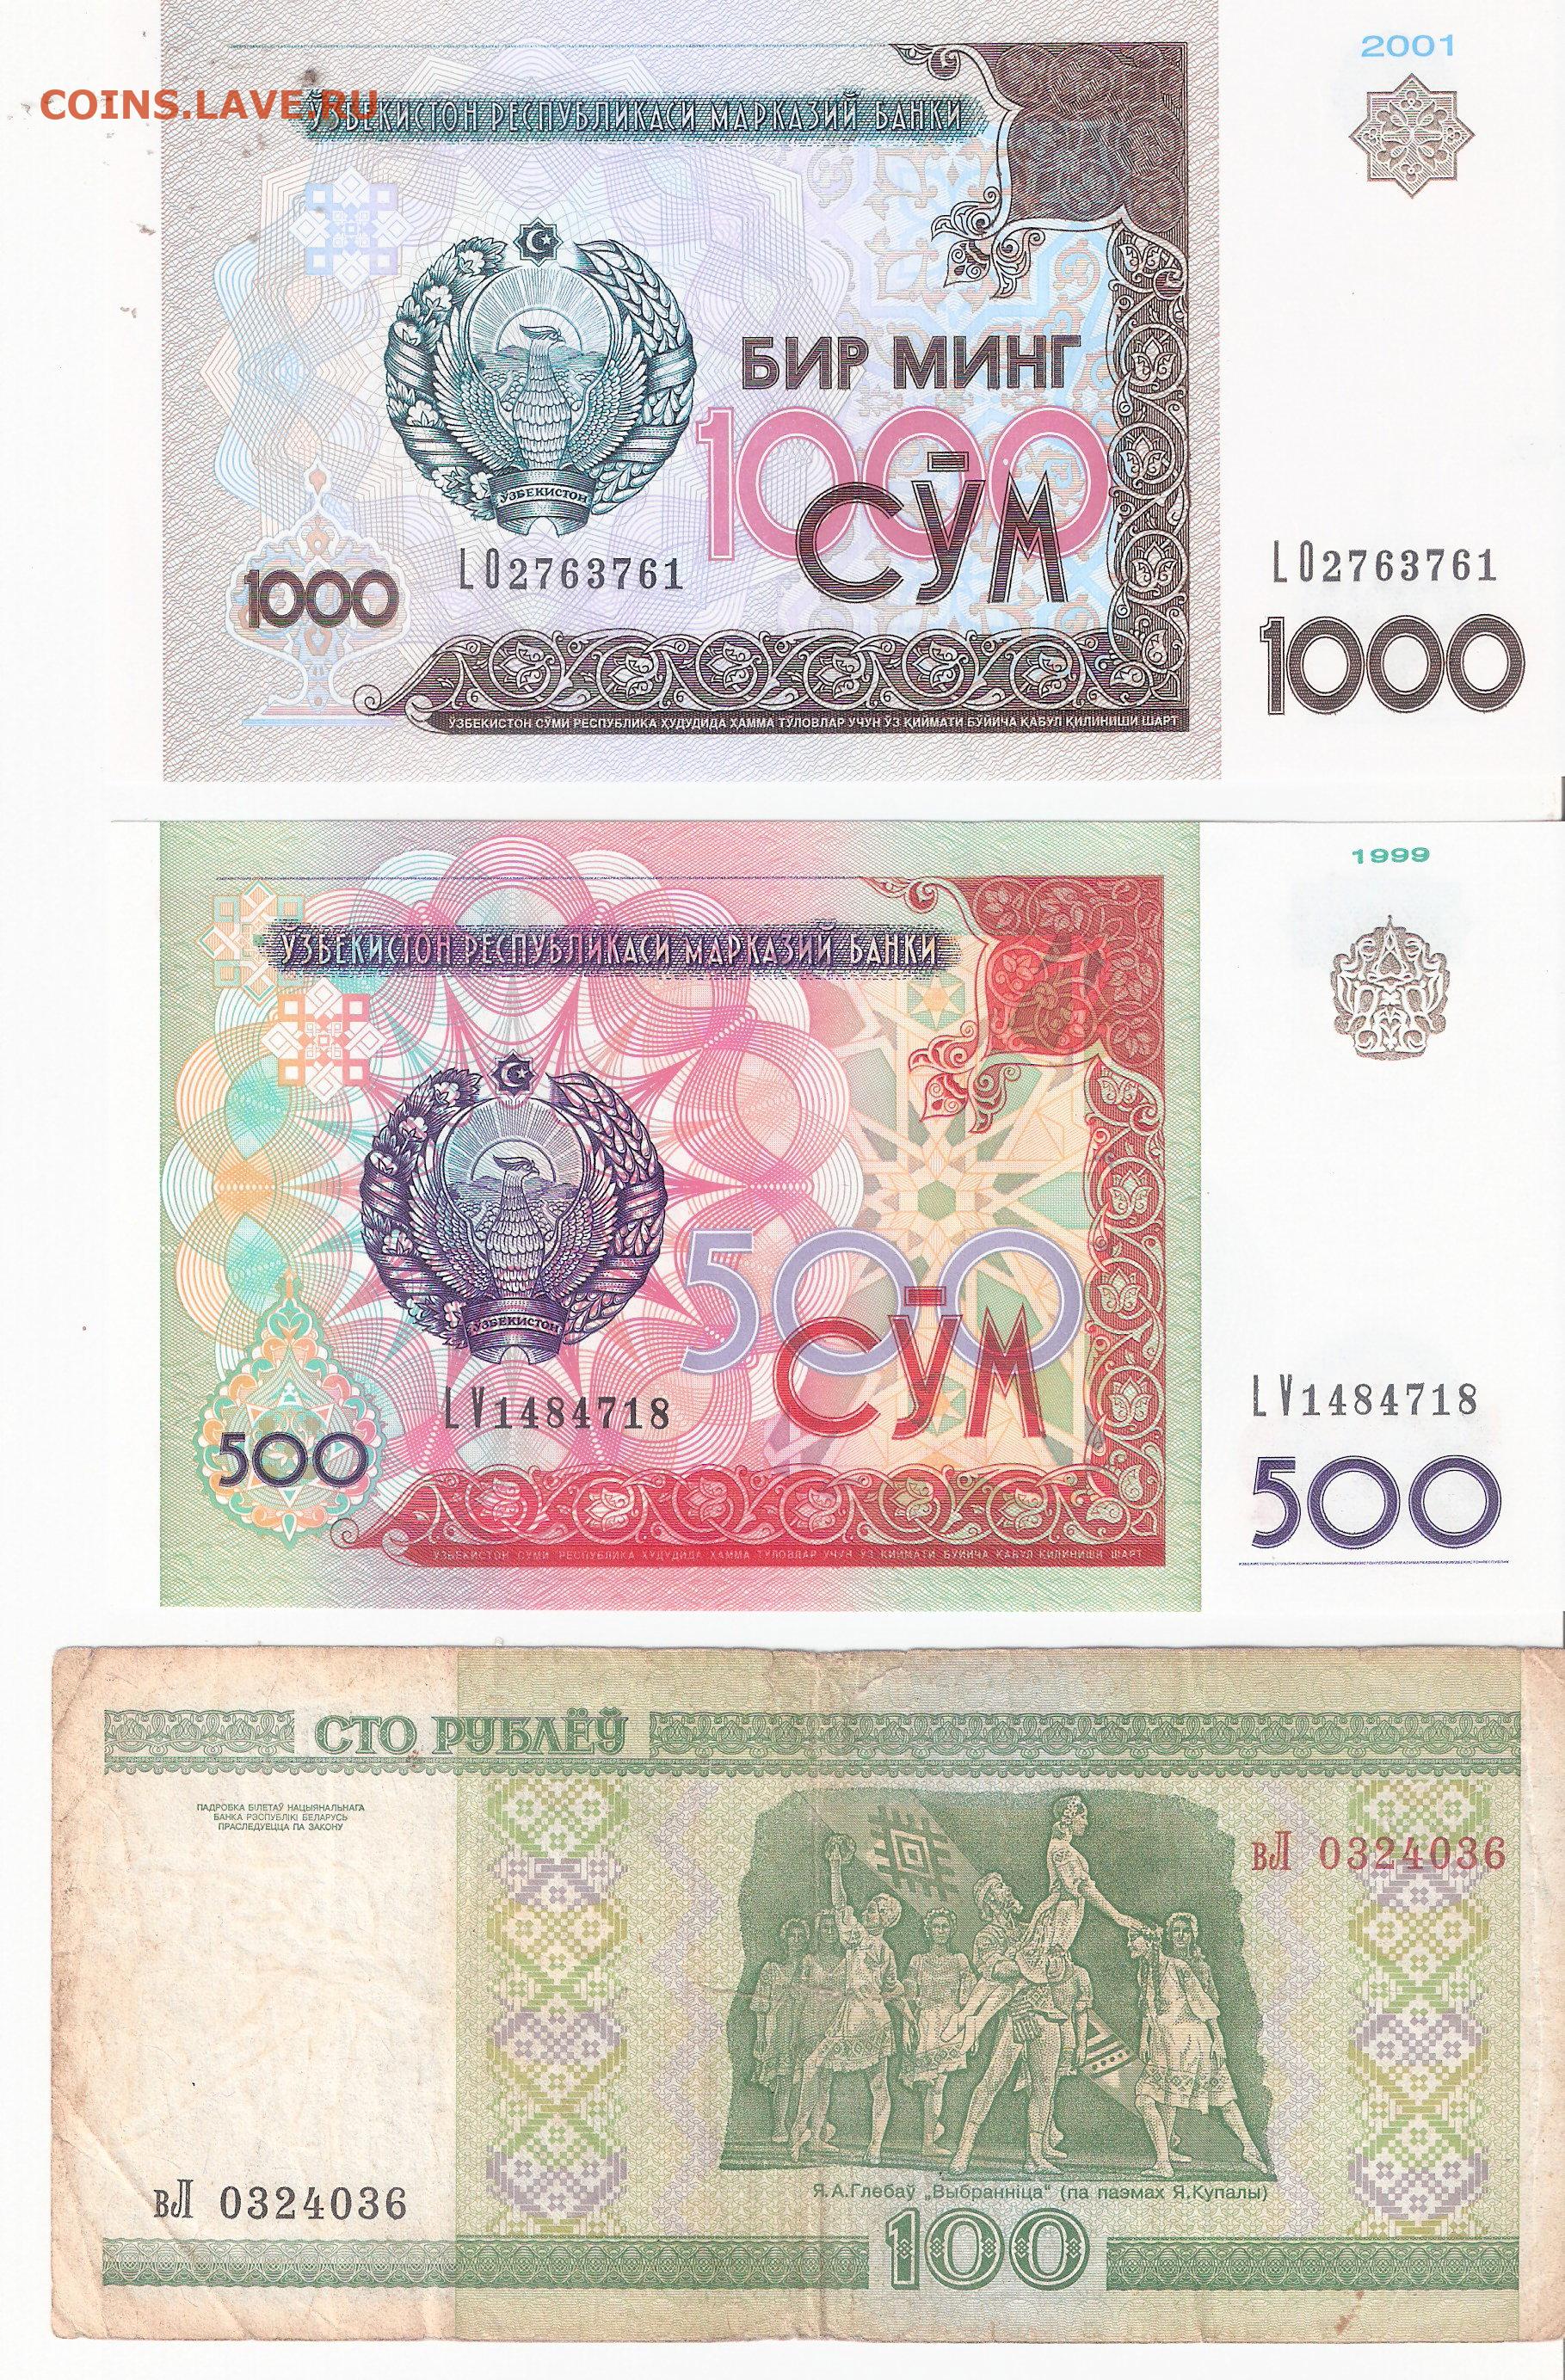 5000 рубль в сумах сегодня. 500 Сум Узбекистан купюра. Купюра 100 сум Узбекистан. 500 Сум купюра. 1000 Сум купюра.